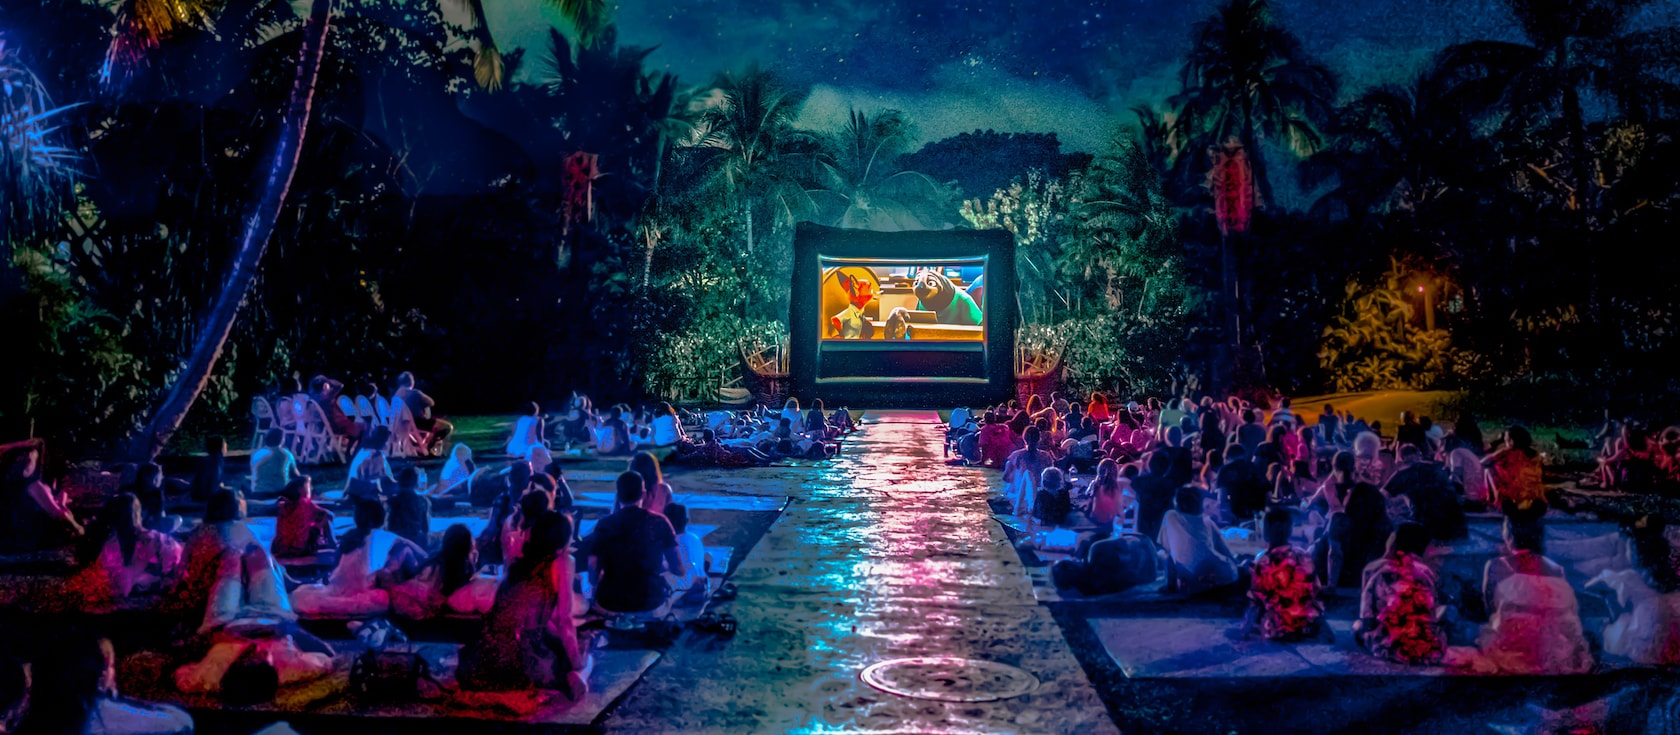 日没後、広い芝生の上で映画を観る人たち